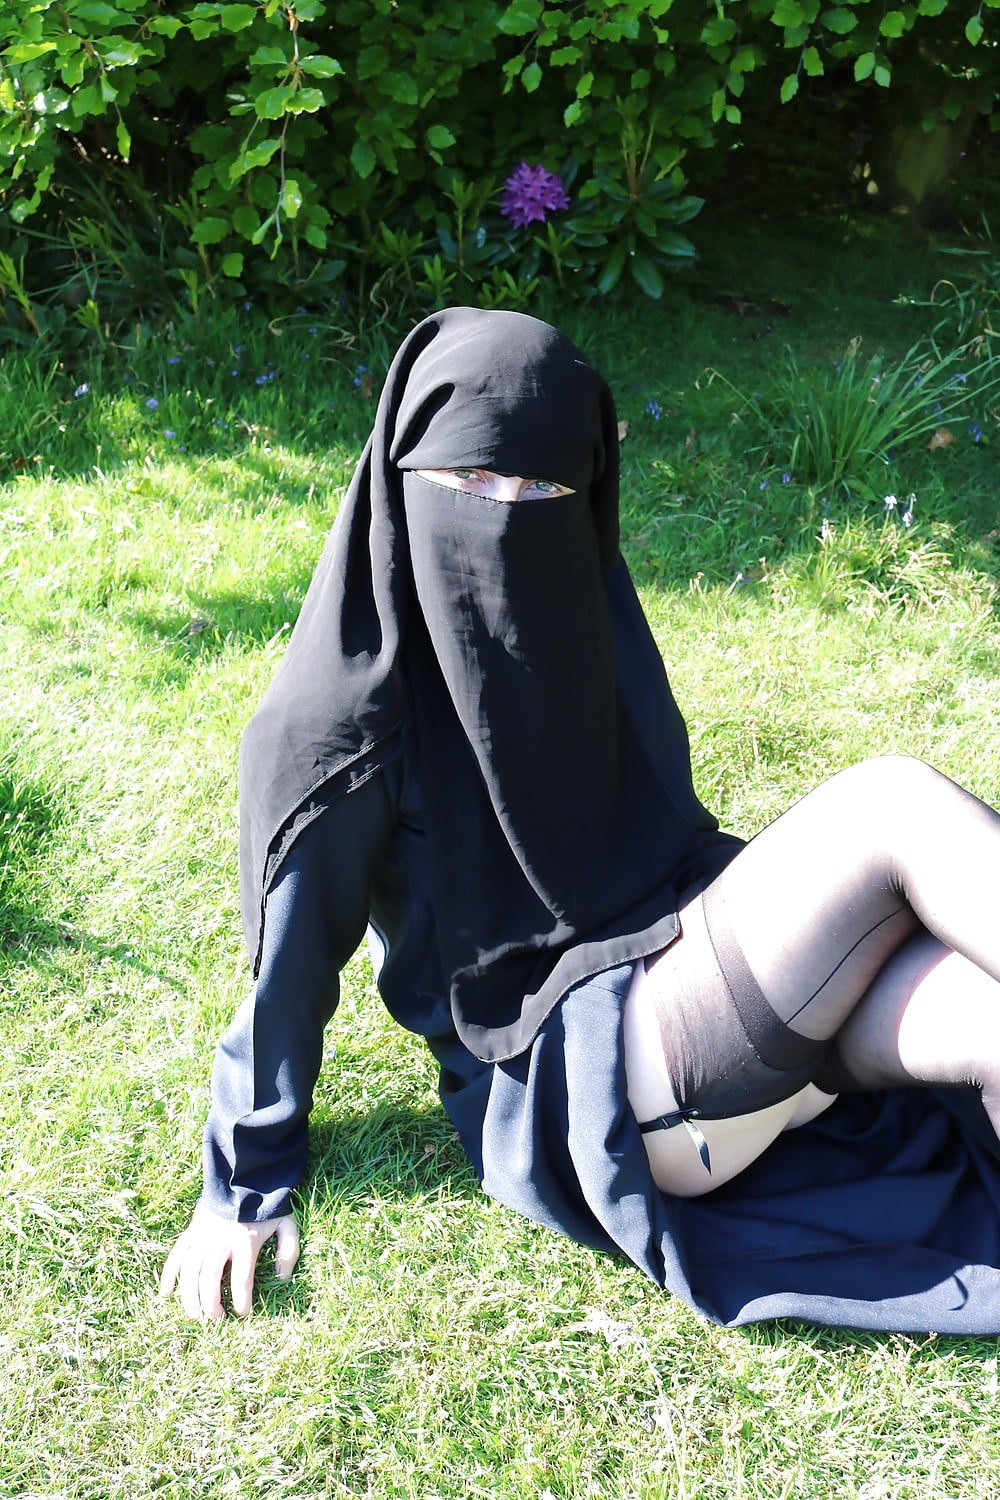 Muslim Burqa Niqab suspenders Outdoors Flashing